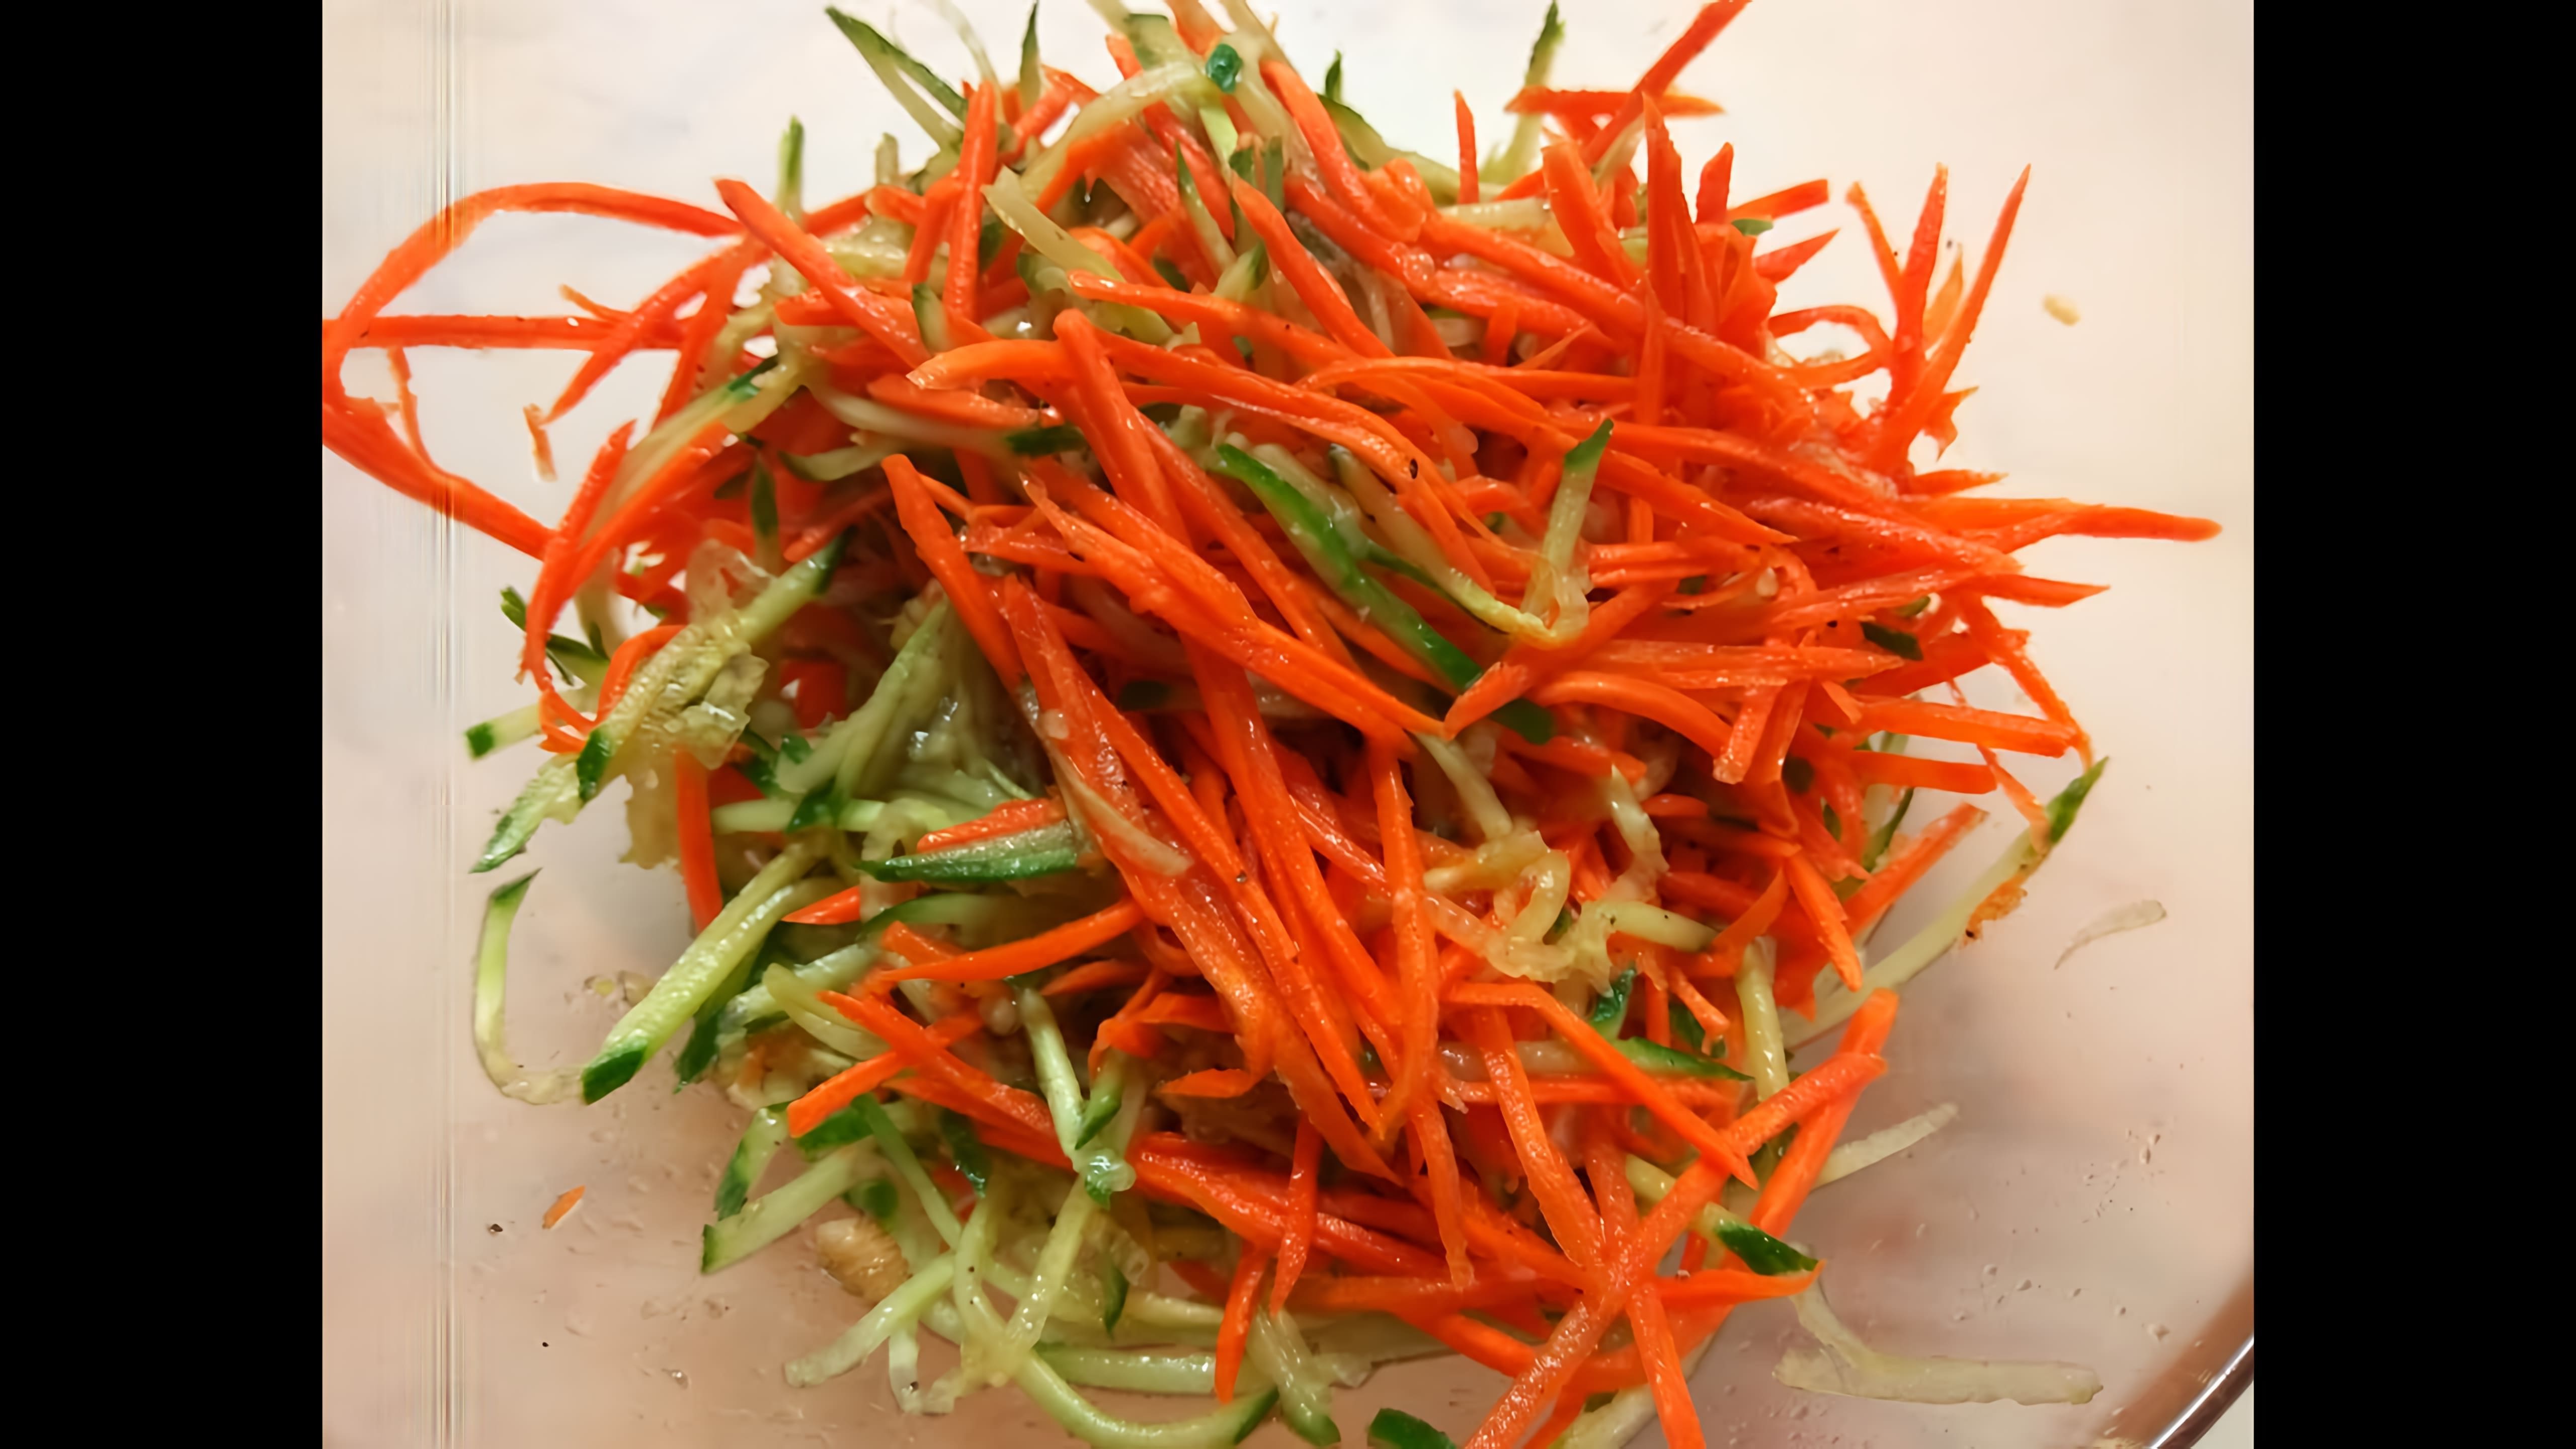 В этом видео демонстрируется процесс приготовления свежего салата из моркови и огурца